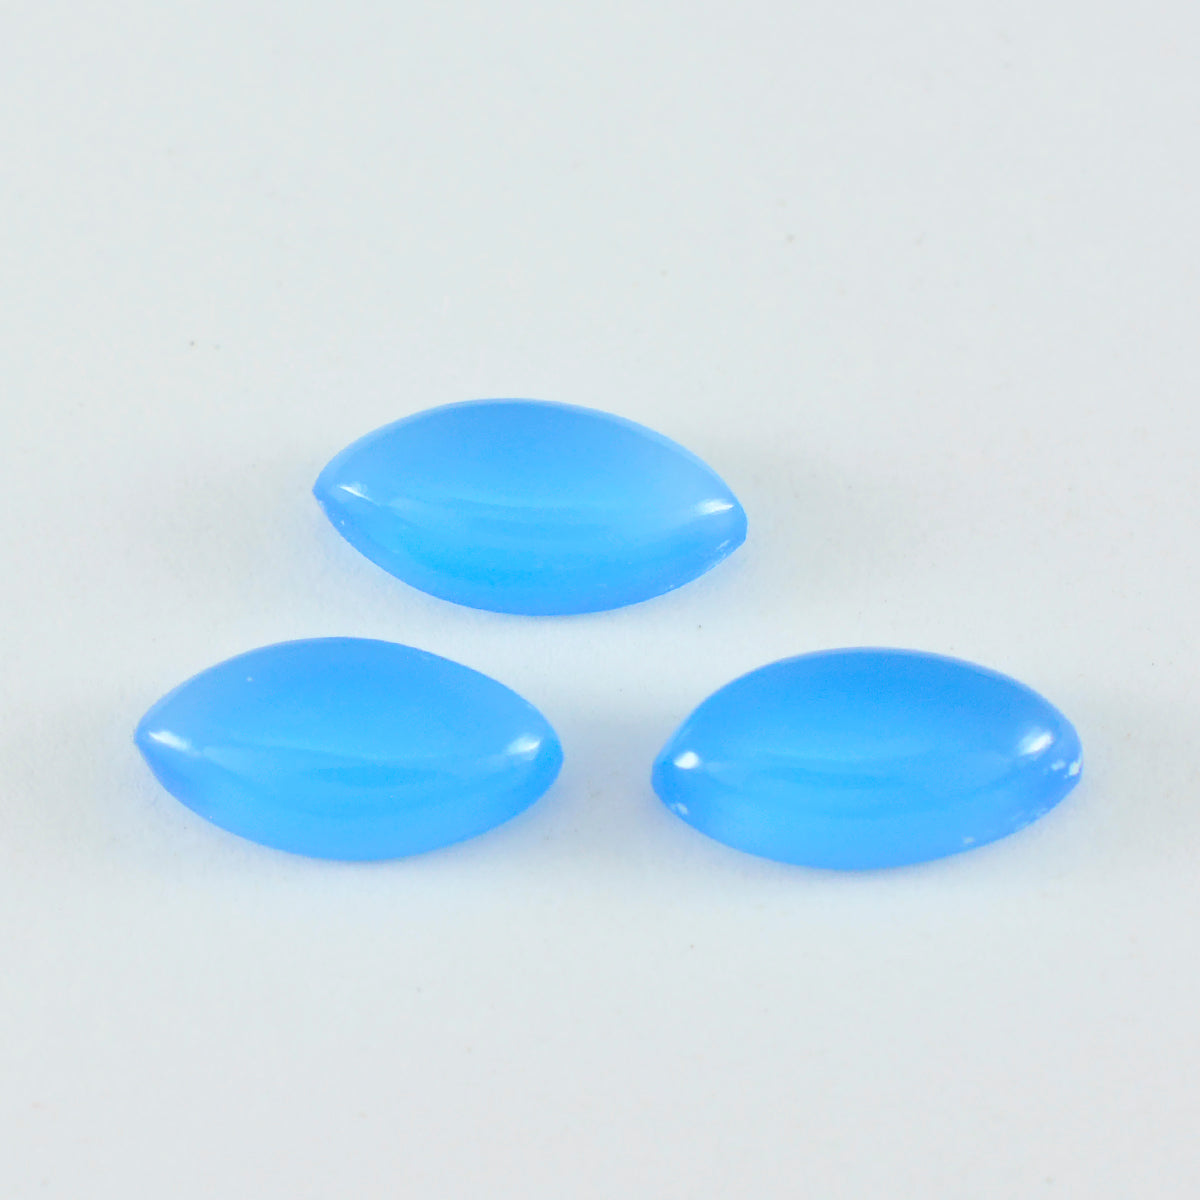 riyogems 1 шт. синий халцедон кабошон 6x12 мм форма маркиза прекрасное качество свободный драгоценный камень